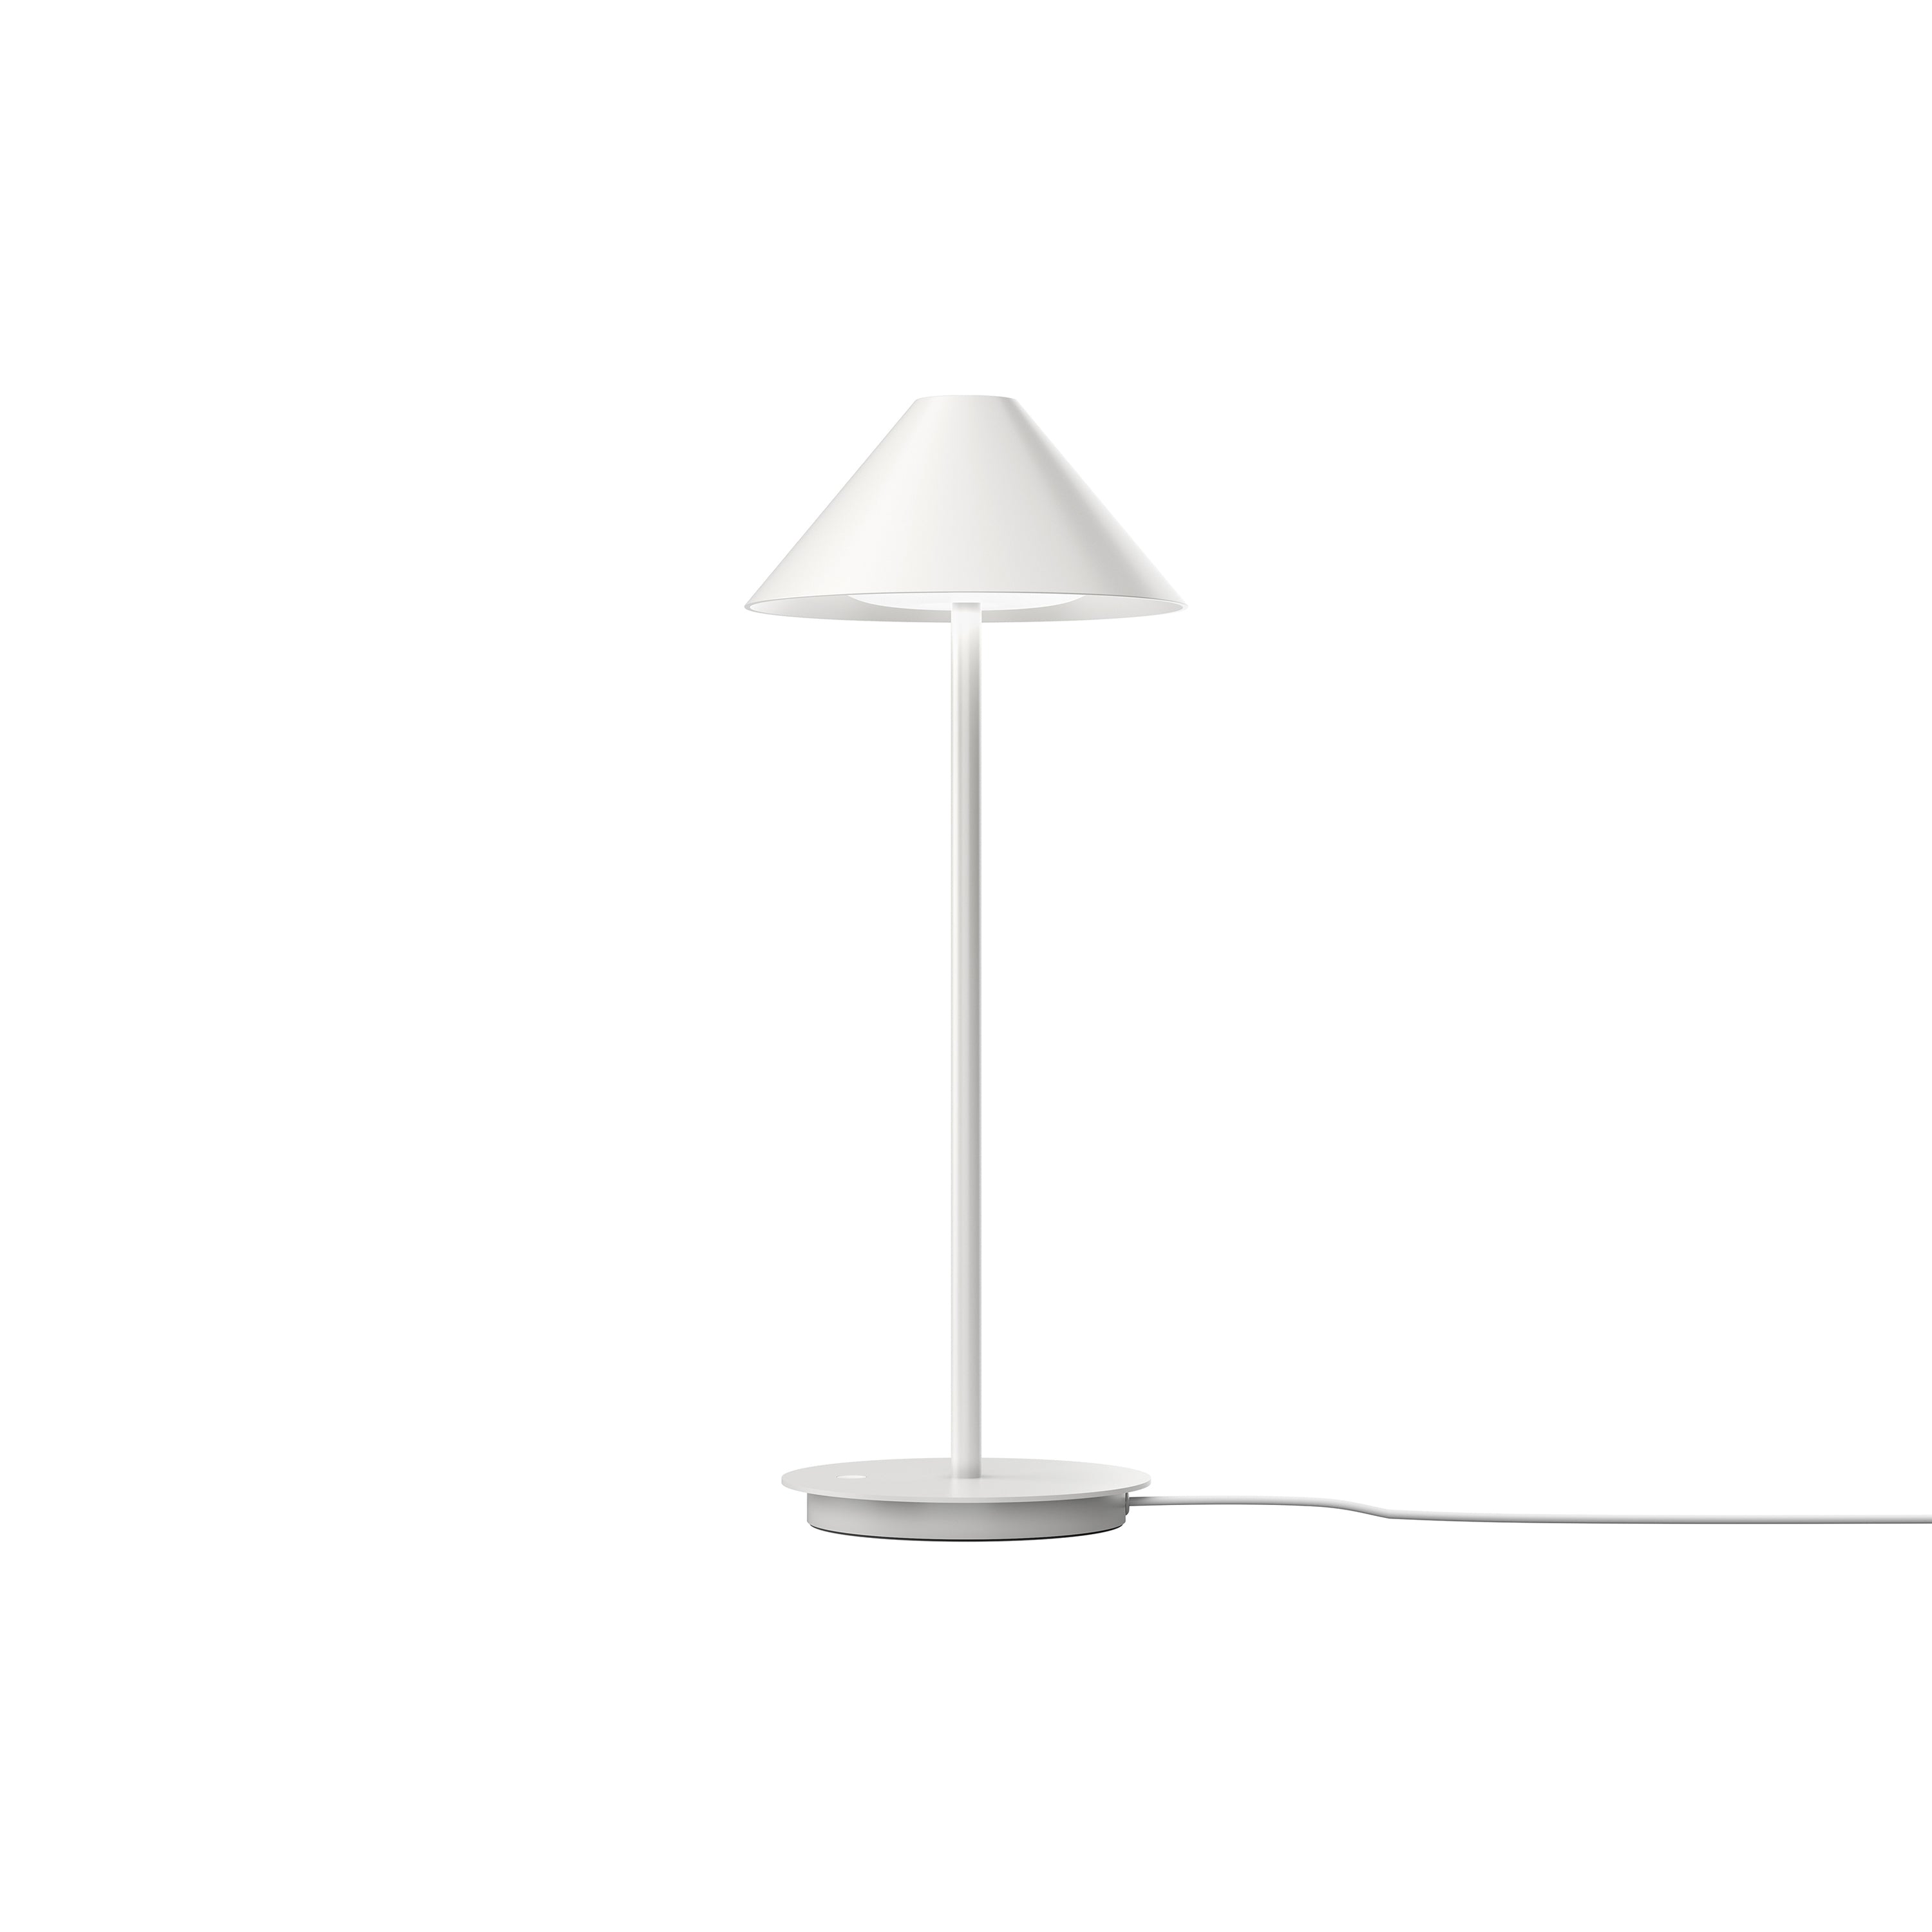 Keglen Table Lamp: White + Base